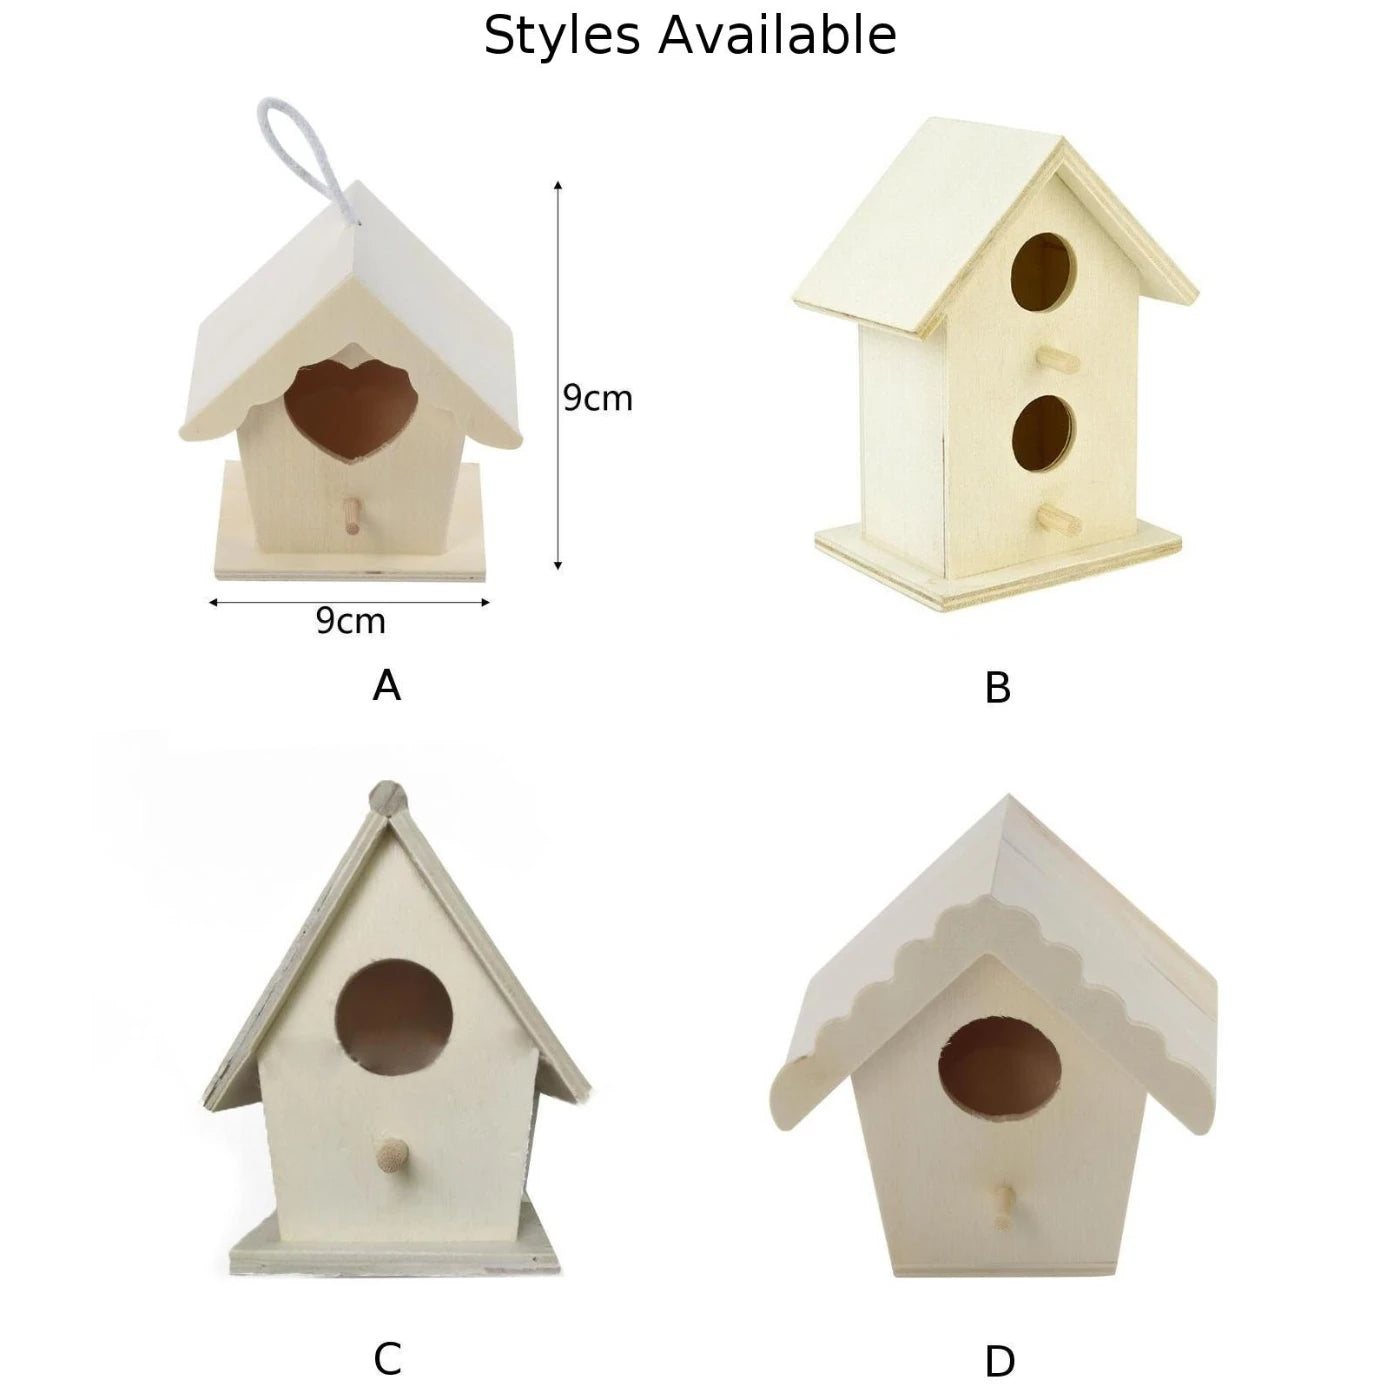 Drewniany ptak house gniazdo ptaków pudełko ptaków wesoły dom do ogrodowego siedliska ptaków idealne miejsce gniazdowania do ochrony ptaków